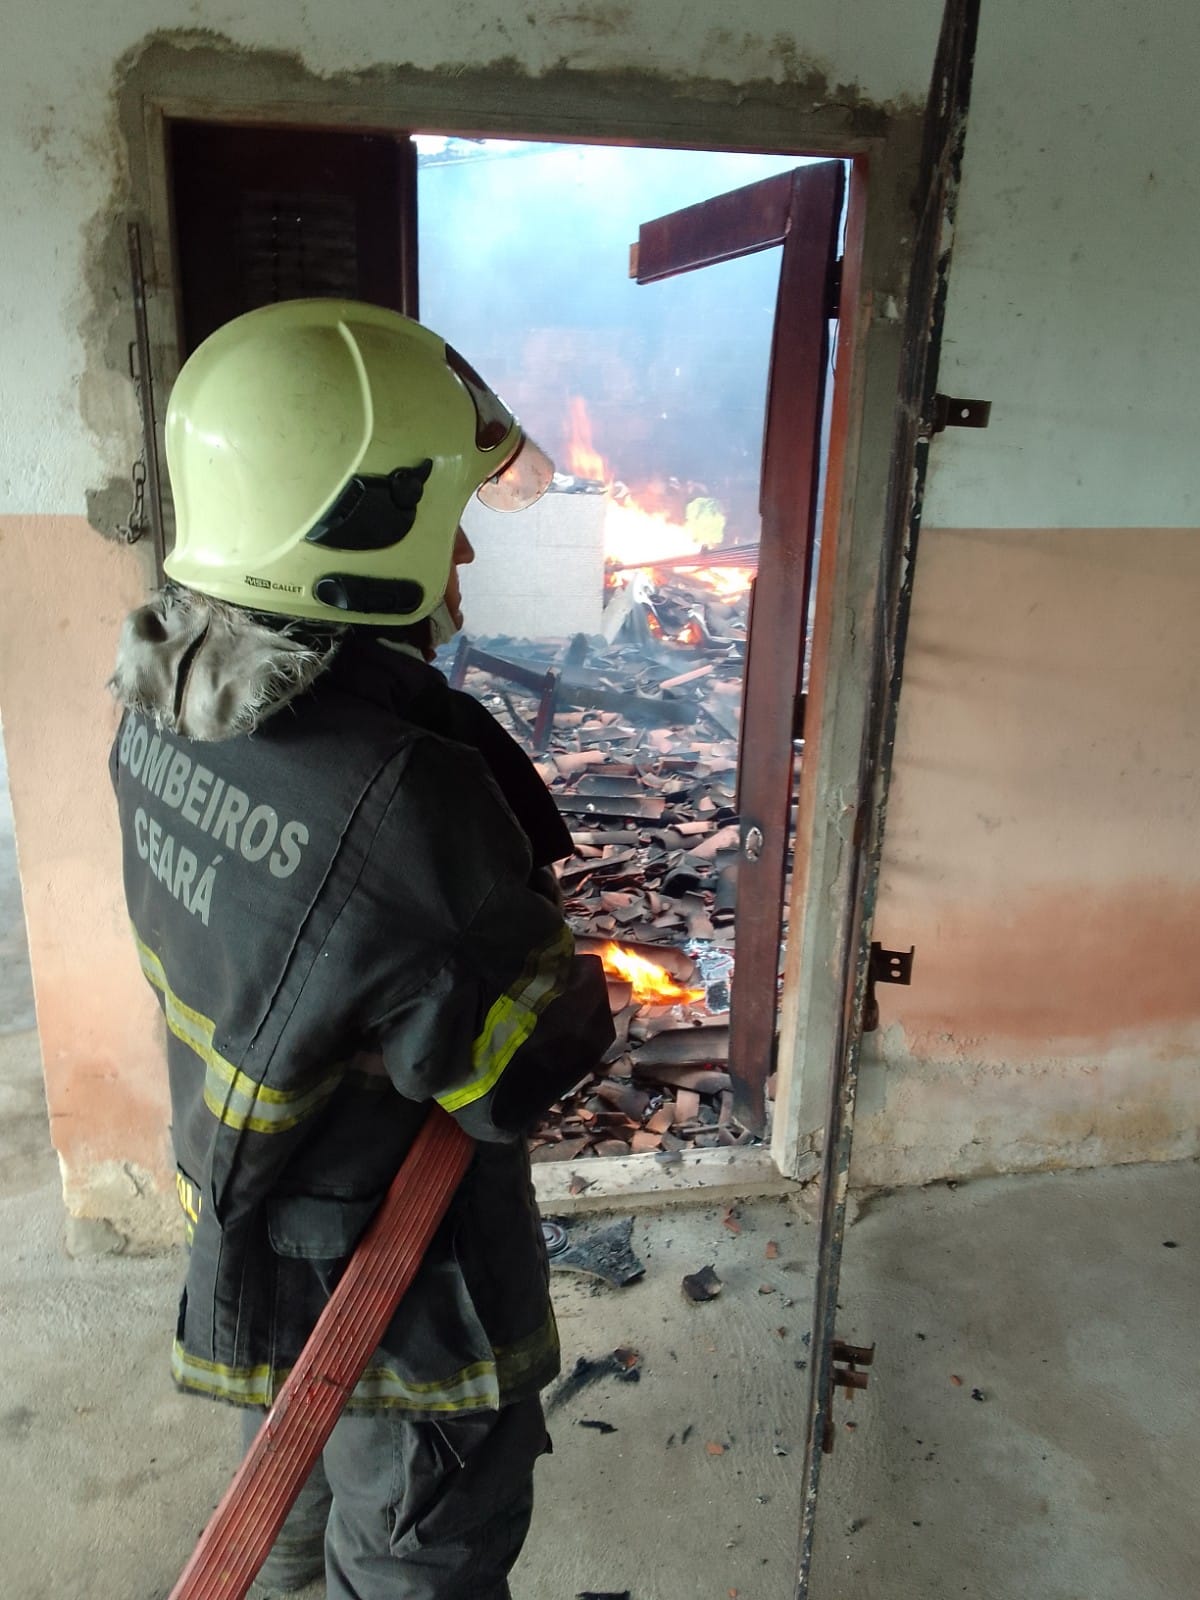 Corpo ce Bombeiros apagam incêndio e resgatam vítima de residência em chamas na Itaitinga